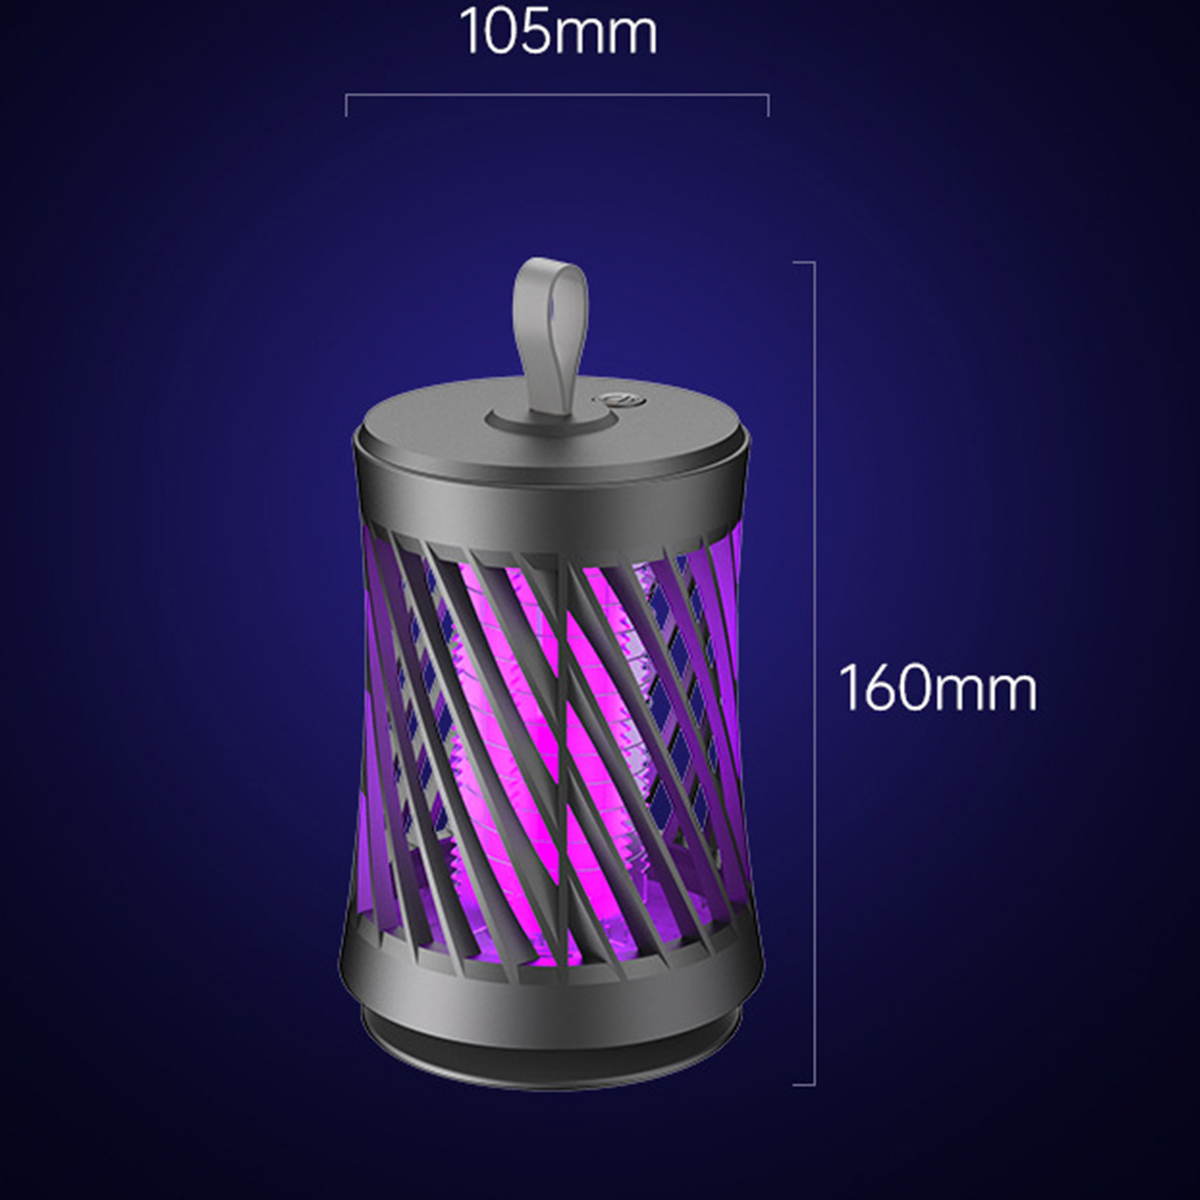 BRIGHTAKE USB Wiederaufladbare Moskito-Killer-Lampe Photokatalysator Insektenvernichter Moskito-Fang|50sqm Stiller